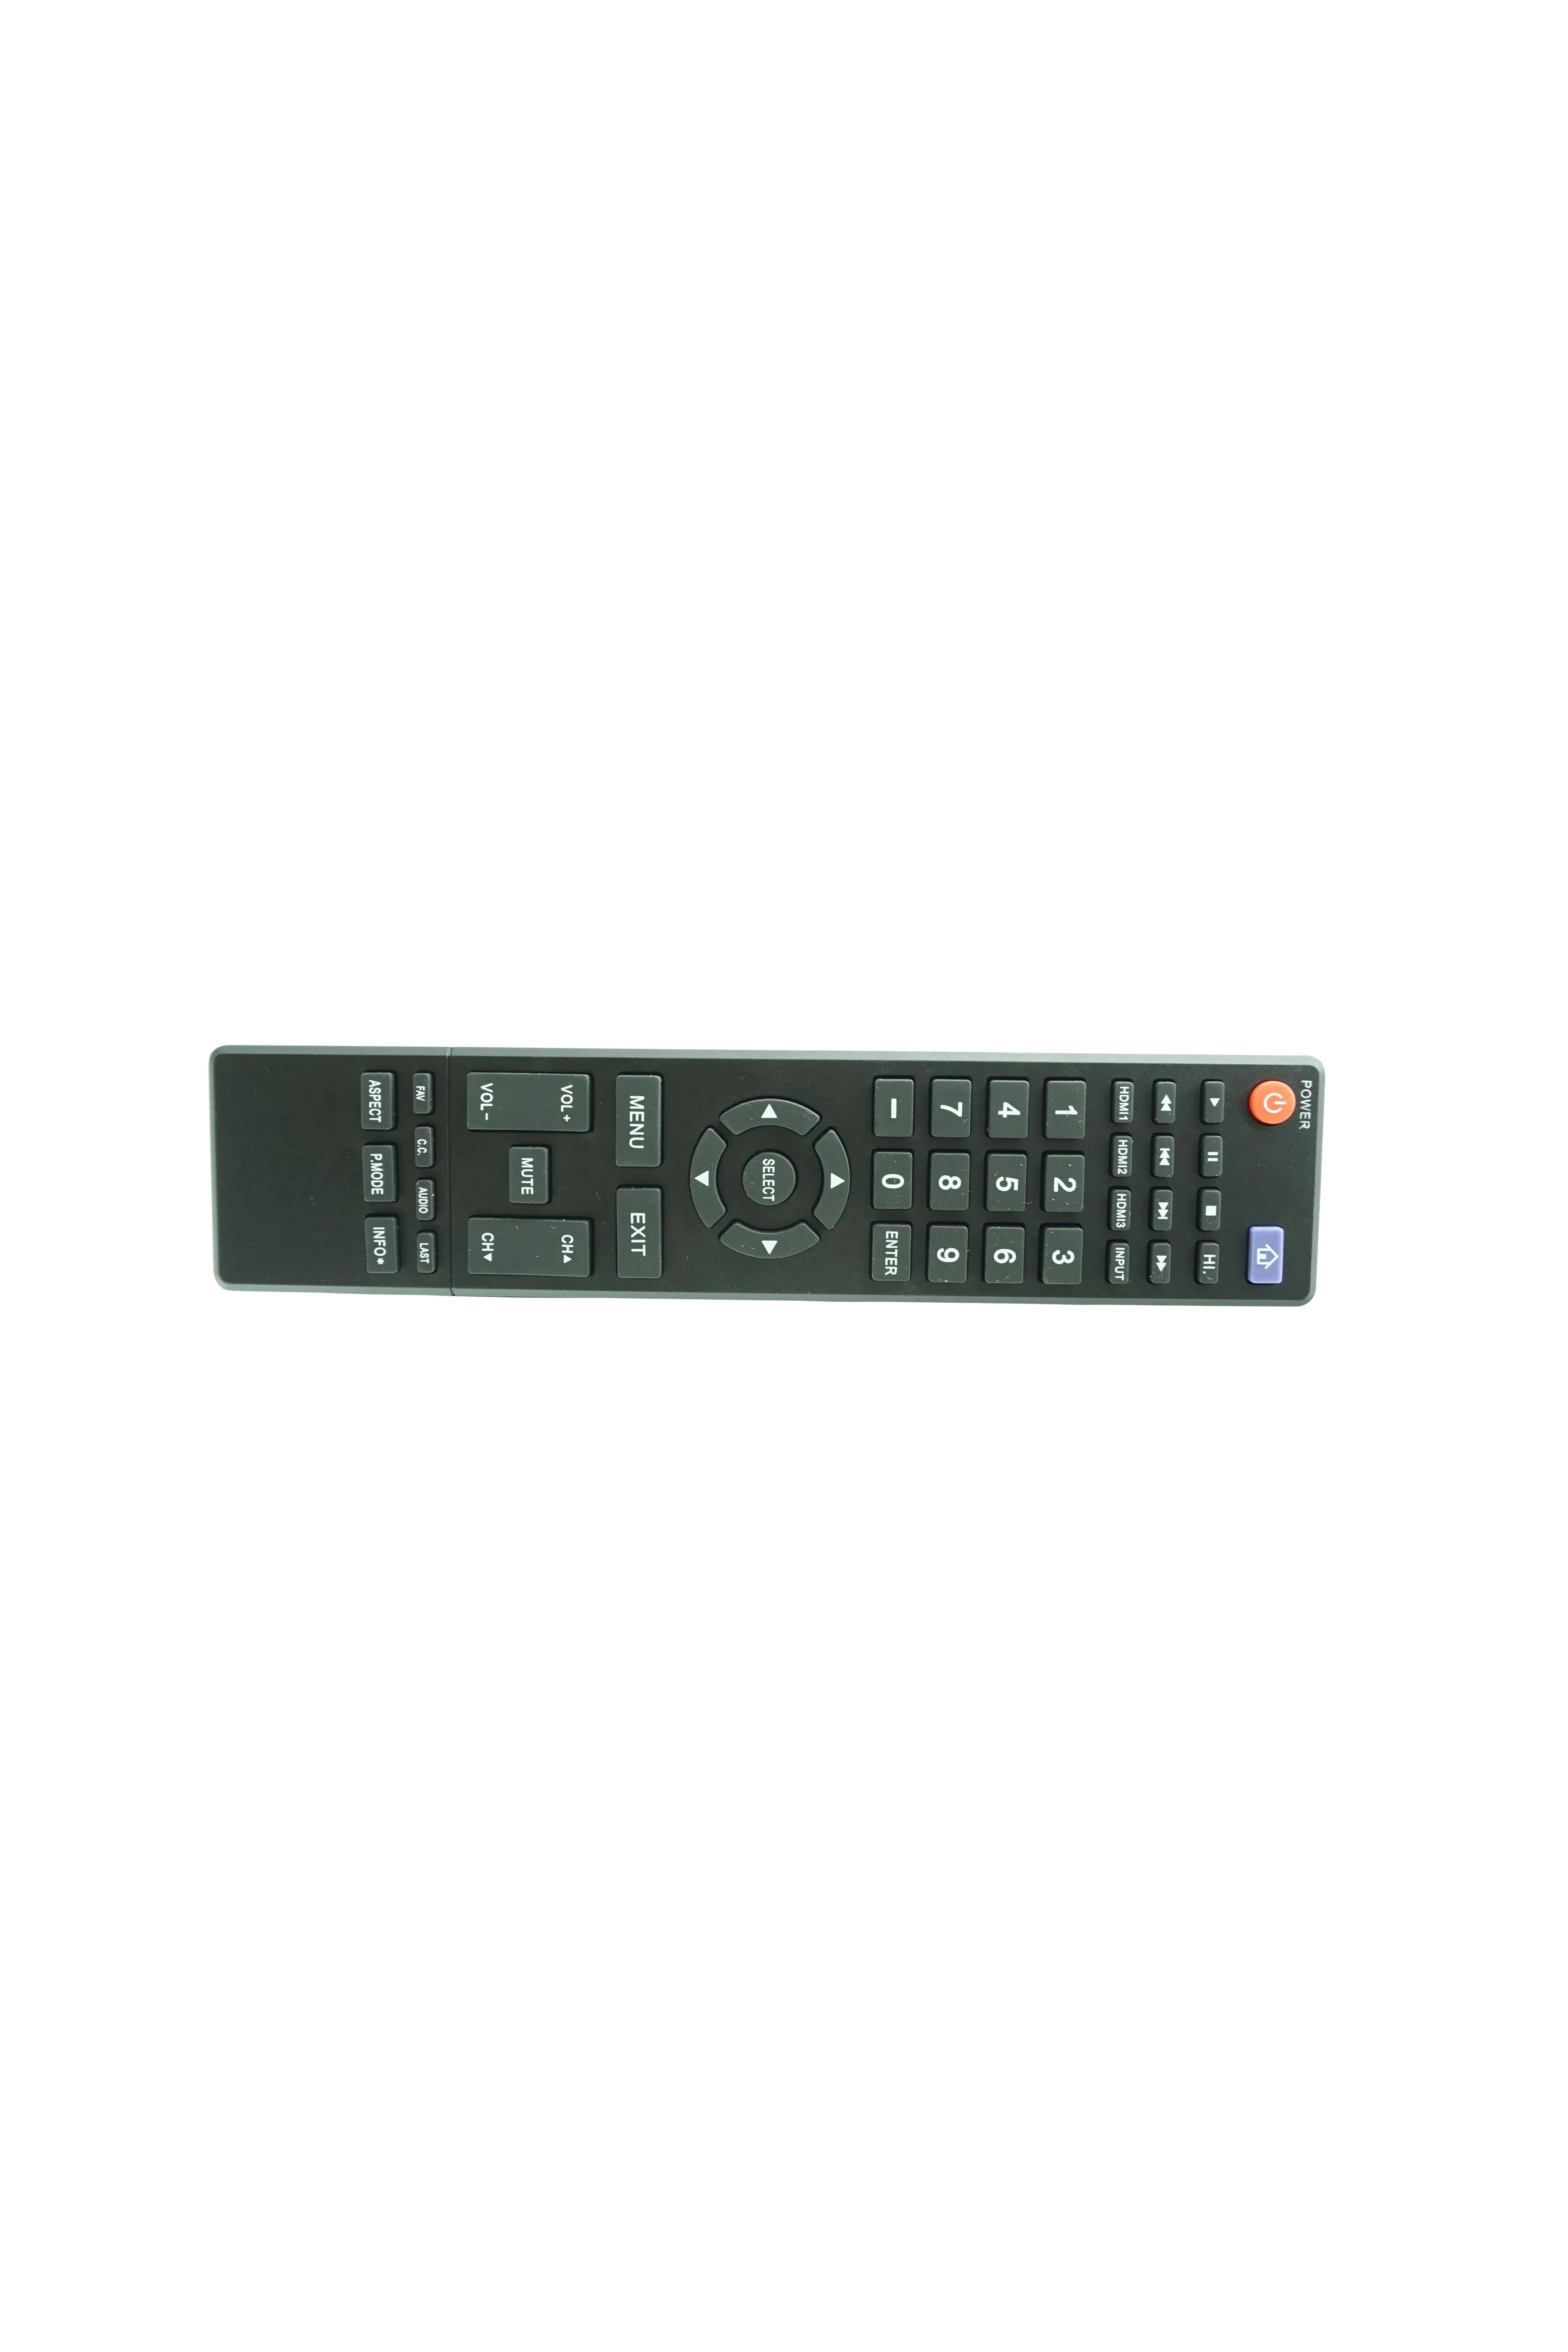 Пульт дистанционного управления для Hitachi CLE-1008 LD32VZ07A LE32A04A LE42X04A LE47X04A LE55X04A LE42X04AM LE47X04AM LE55X04AM CLE-1010 Smart LCD LED HDTV TV